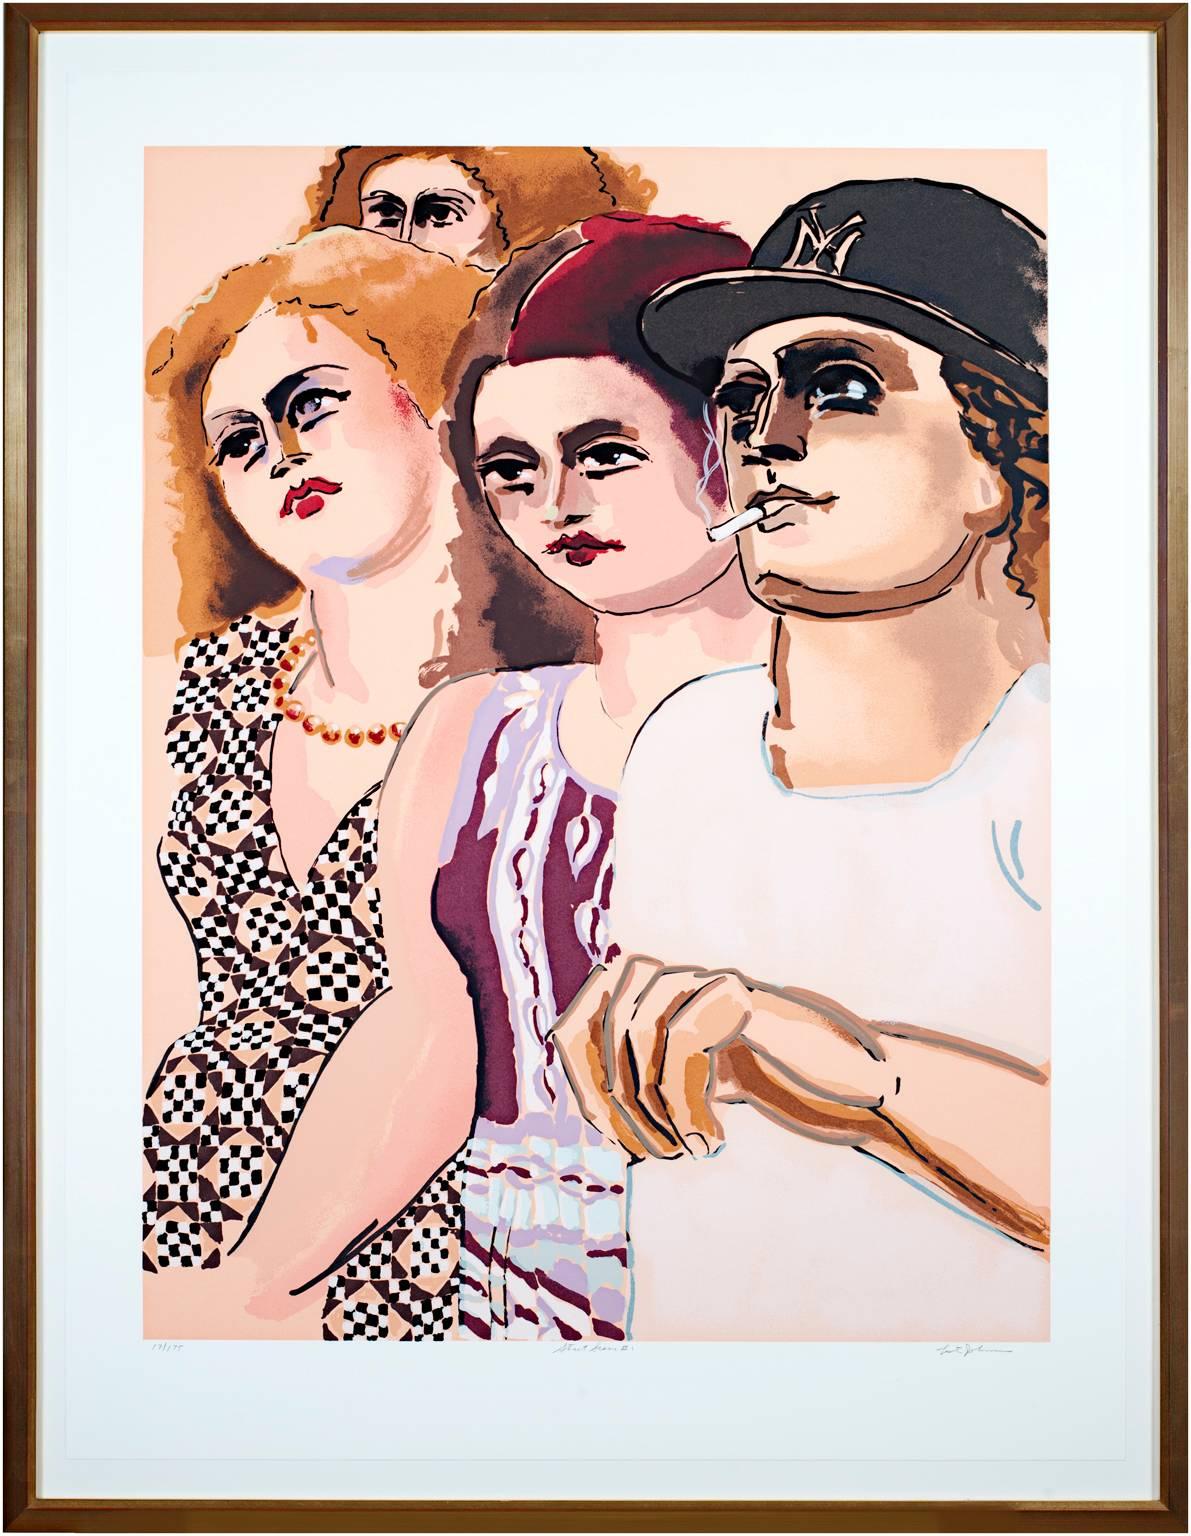 La présente œuvre est une sérigraphie originale signée par Lester Johnson, issue de son "Street Scene Portfolio" Elle représente quatre personnages, tous portant des vêtements de rue à la mode, emblématiques de la culture et de la vie des jeunes.